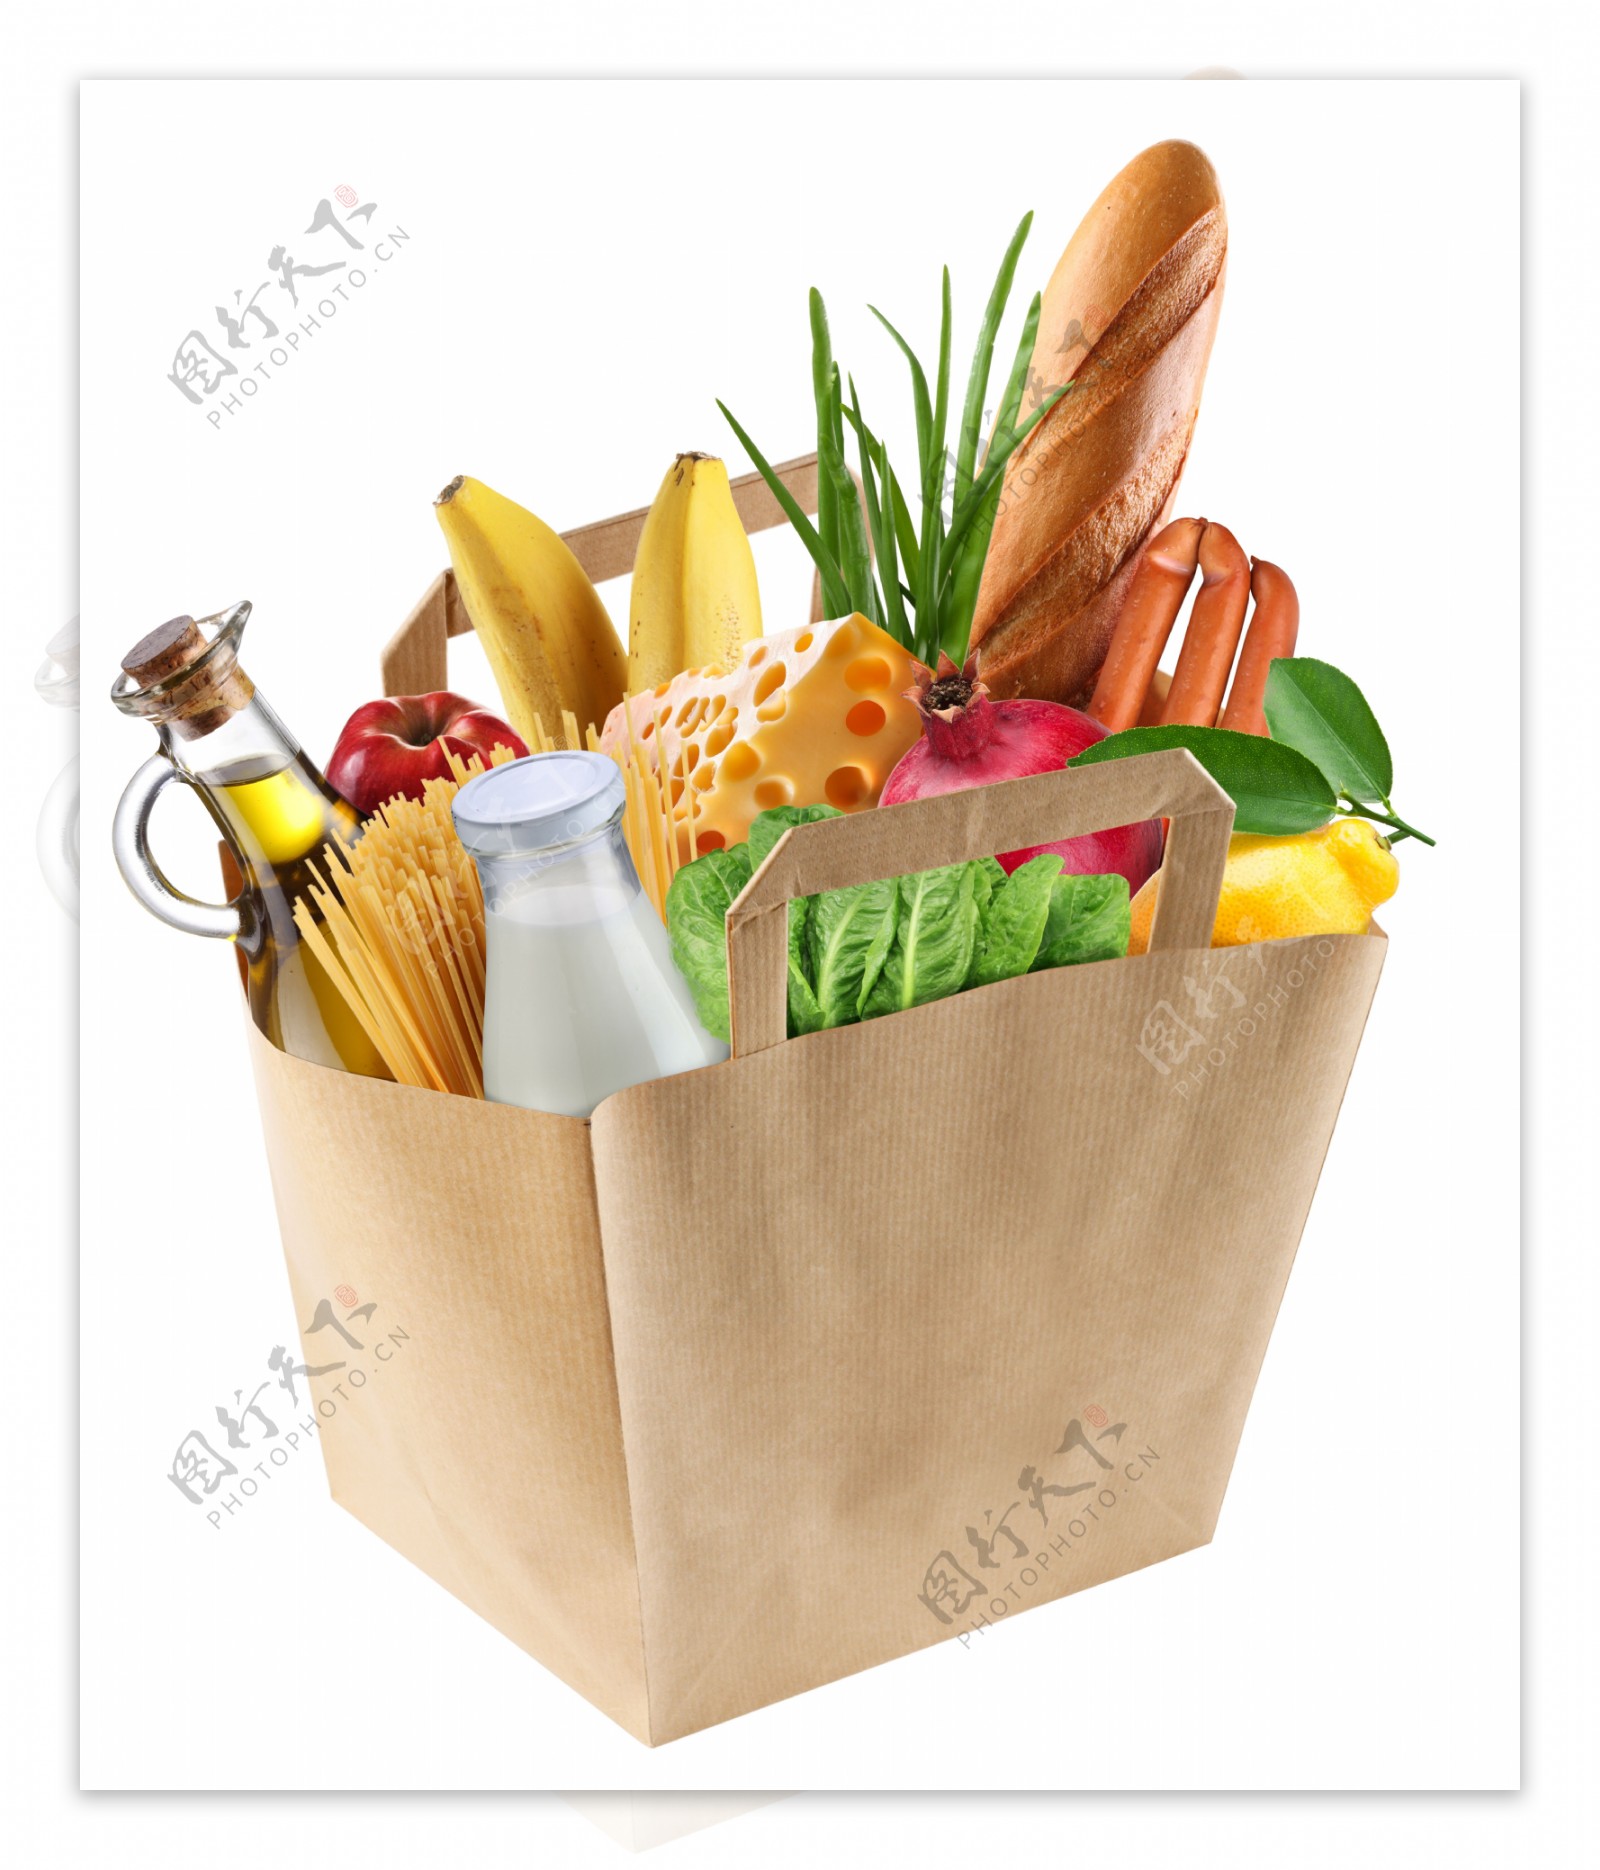 各种蔬菜和水果图片